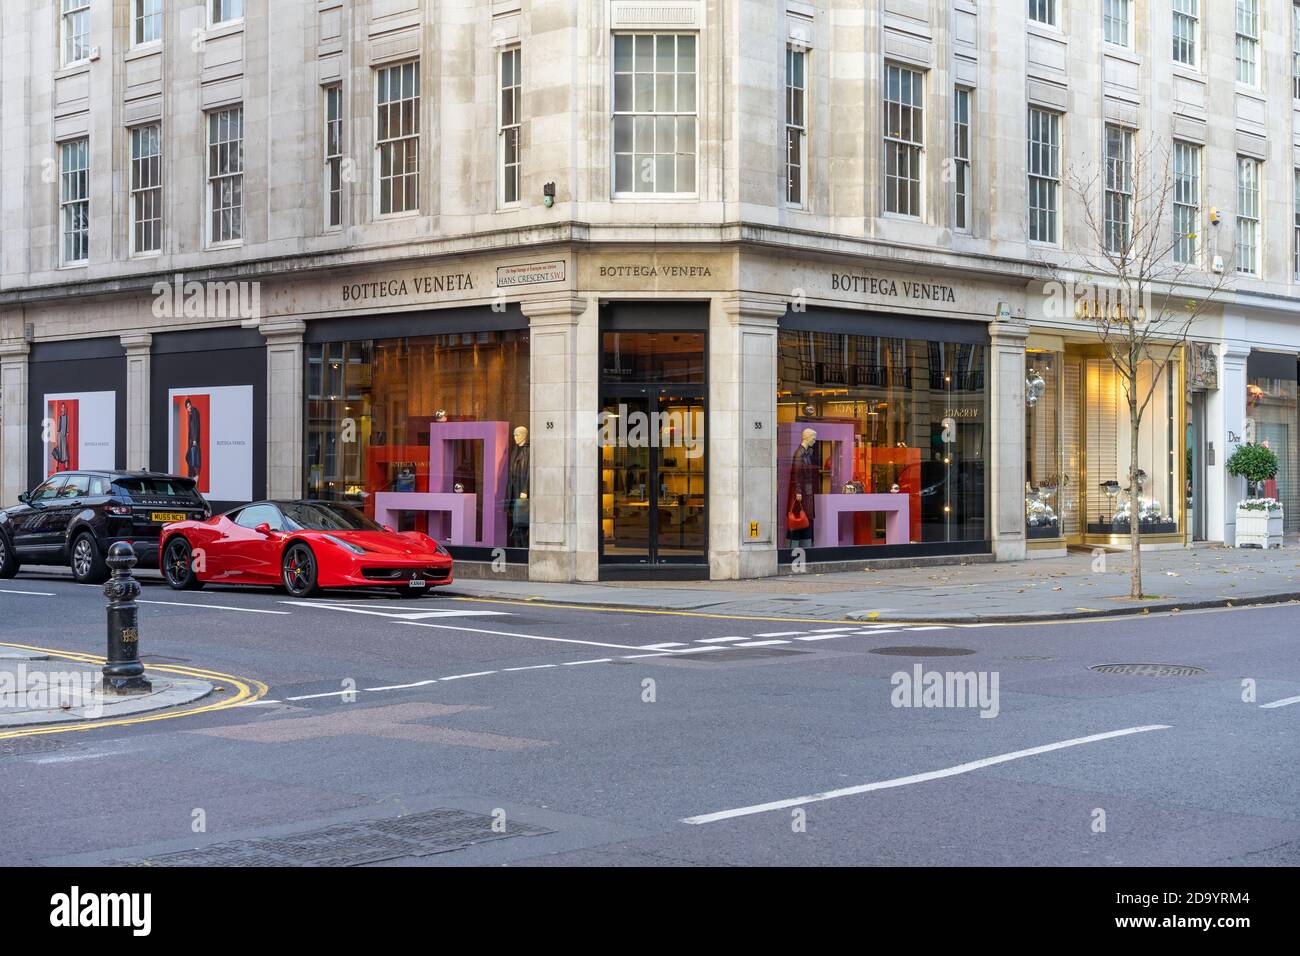 Ferrari garée à côté du magasin Bottega Veneta sur Sloane St, Knightsbridge, Londres SW1X Royaume-Uni Banque D'Images